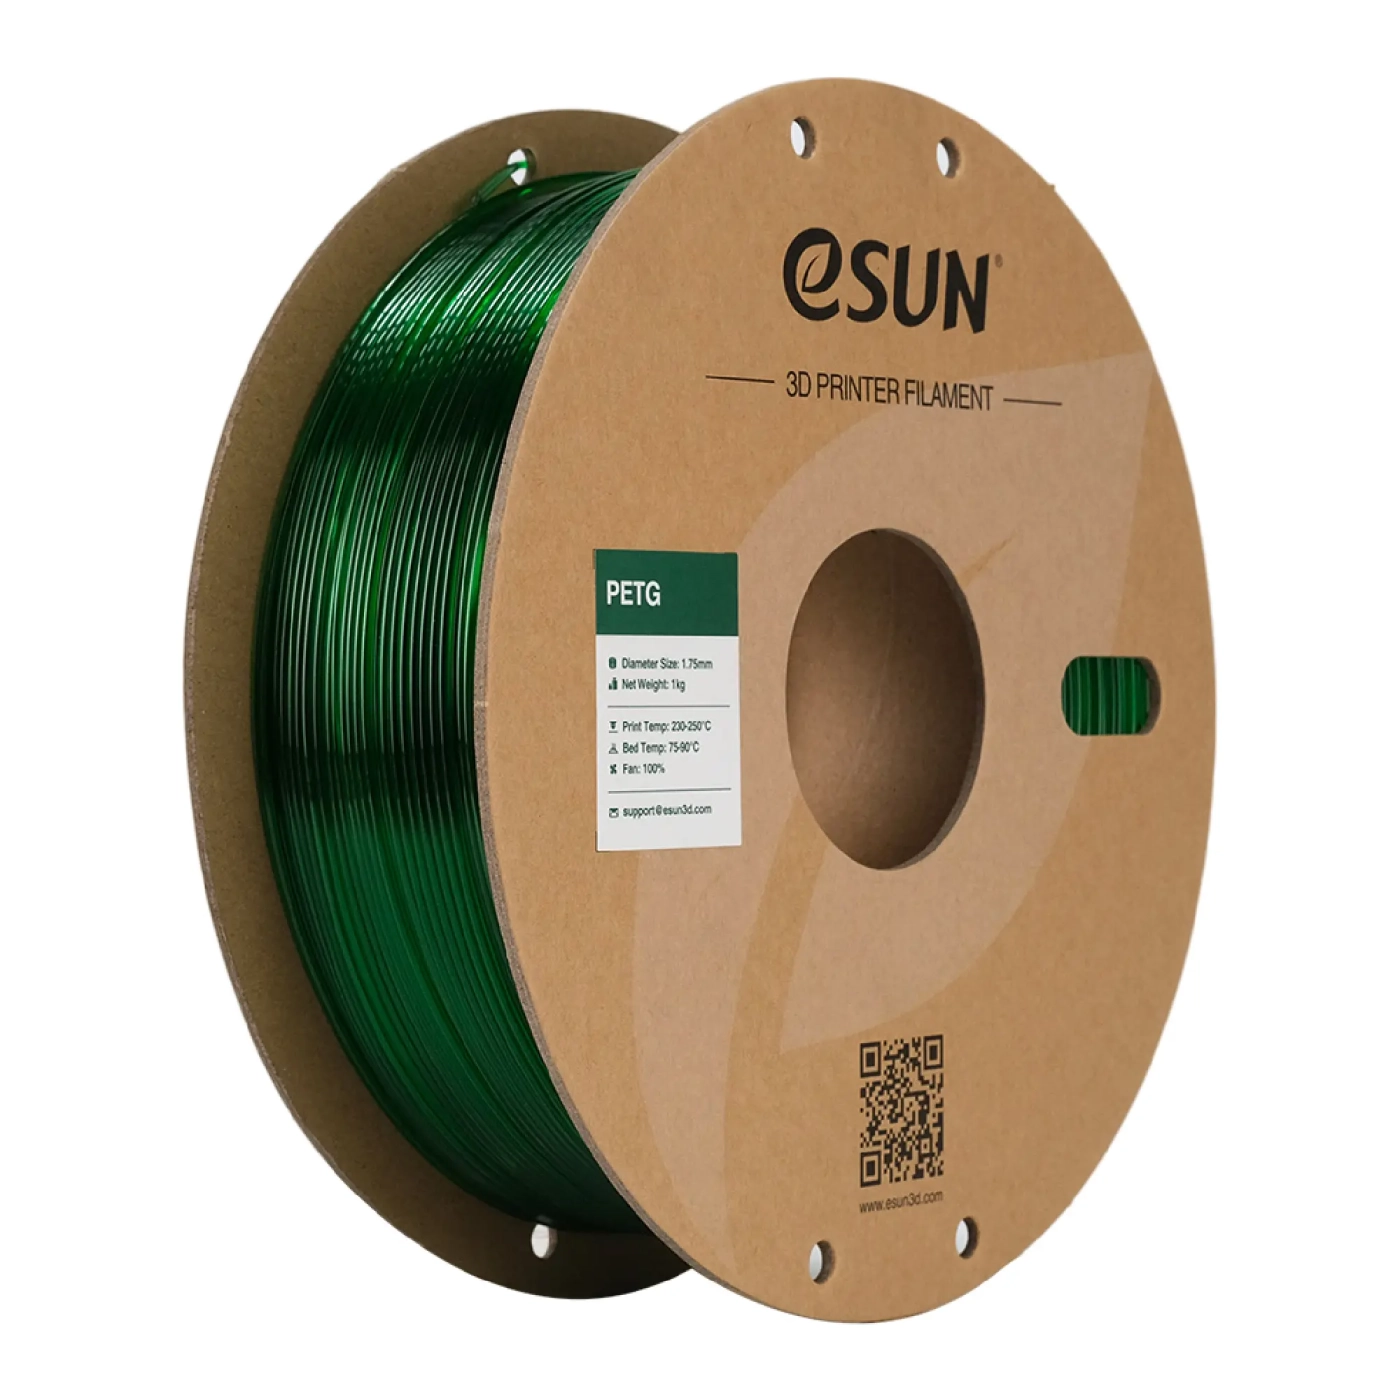 Купить PETG Filament (пластик) для 3D принтера Esun 1кг, 1.75мм, прозрачный зеленый (PETG175G1) - фото 1